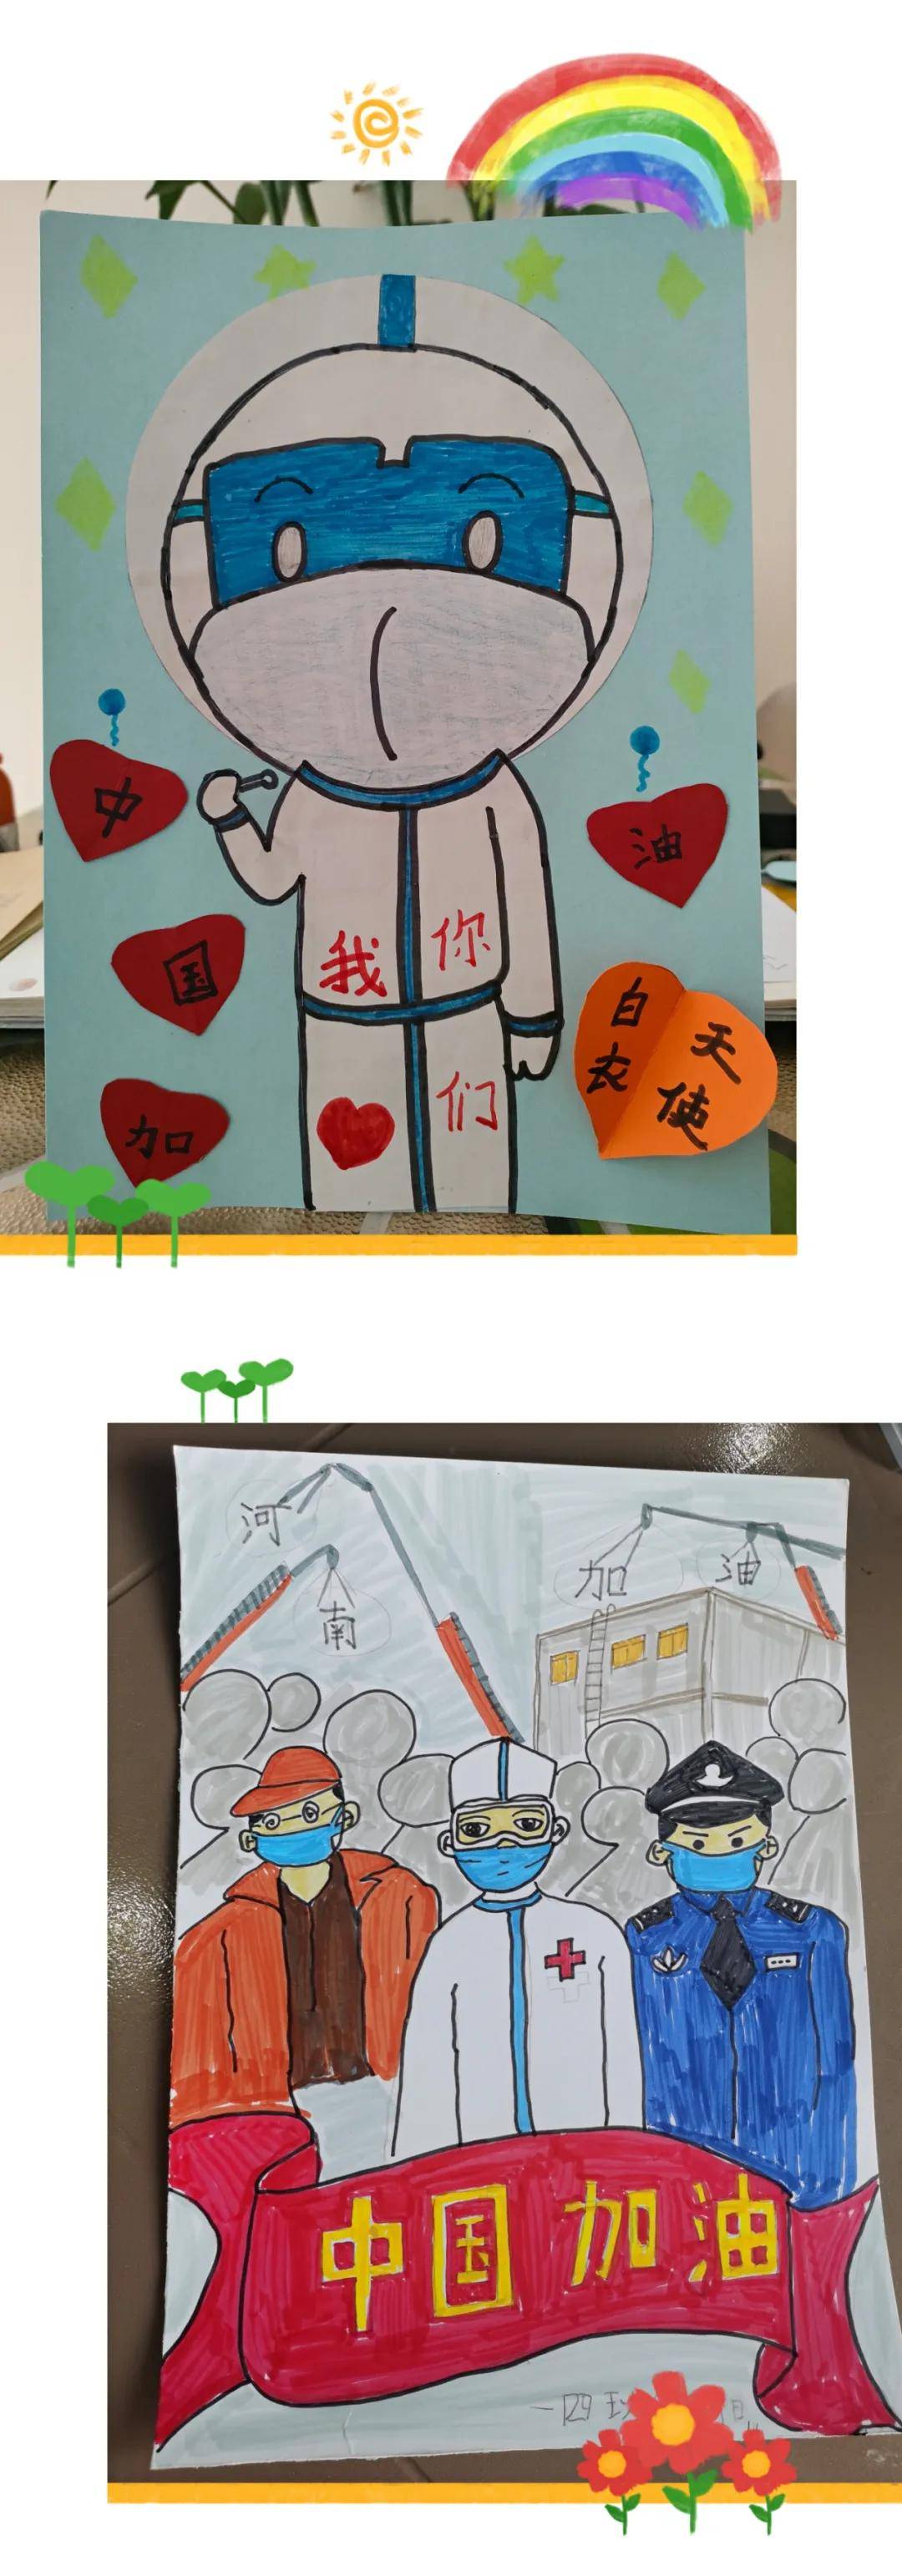 郑州市二七区工人南路小学抗击疫情创意作品制作展播